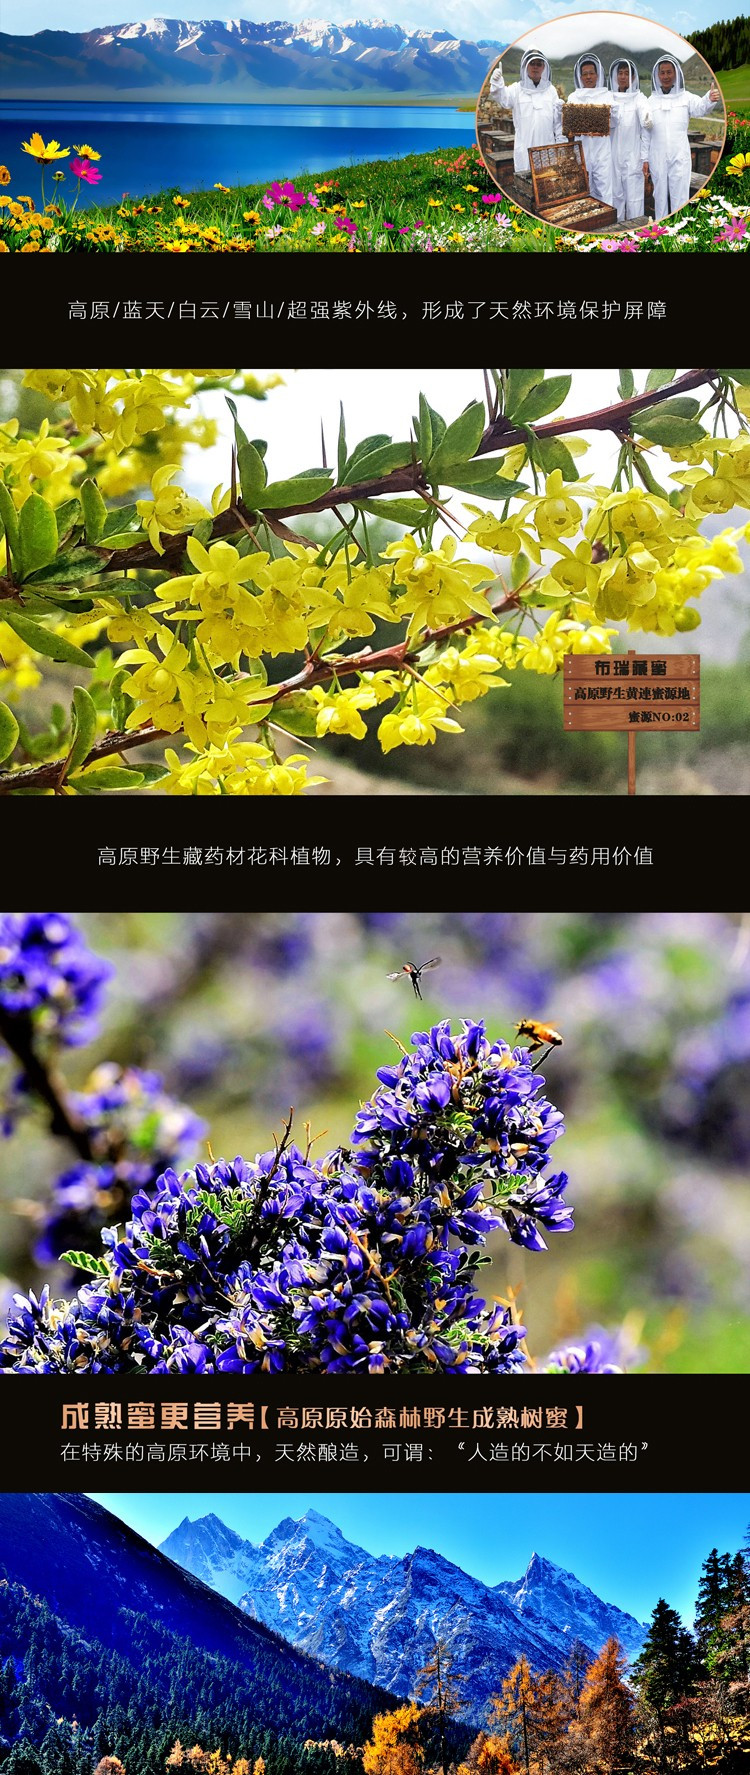 布瑞藏蜜 林芝特产 布瑞藏蜜 野生百花蜂蜜500g 500g